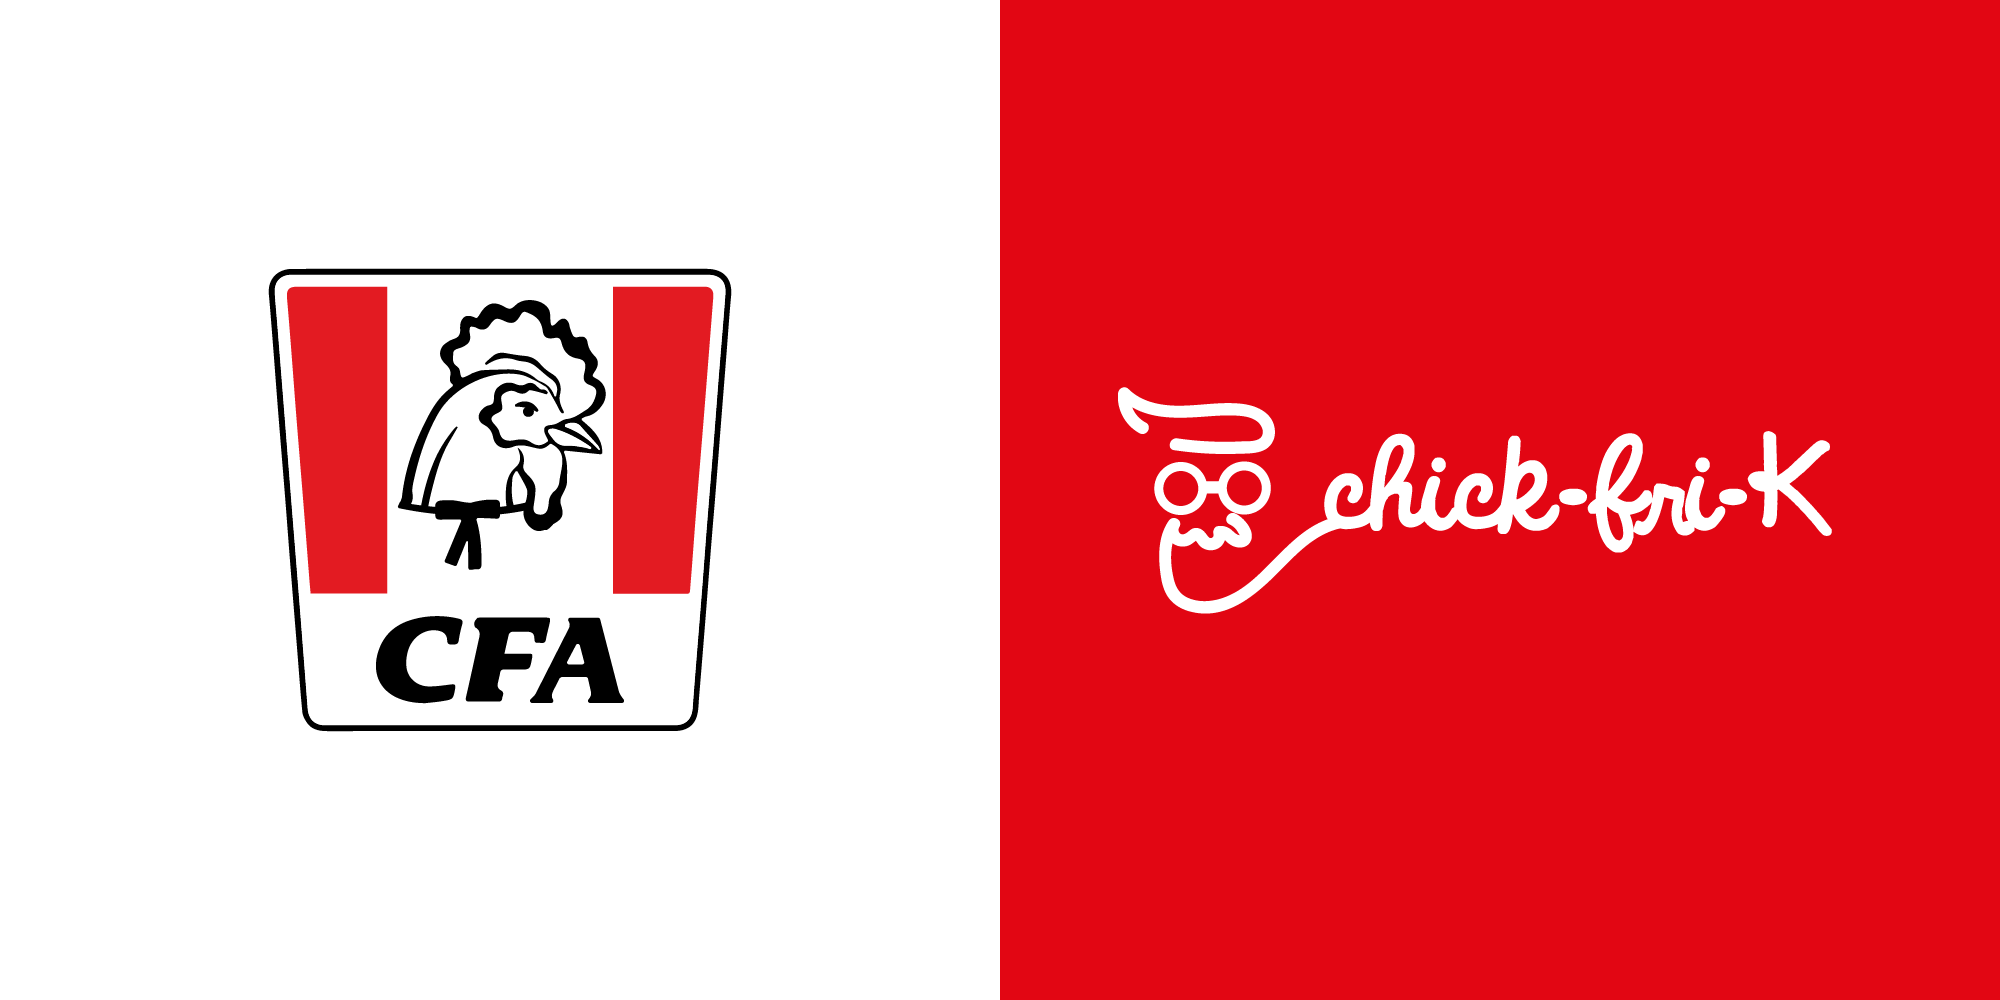 KFC Vs Chick-fil-a logo - CDA